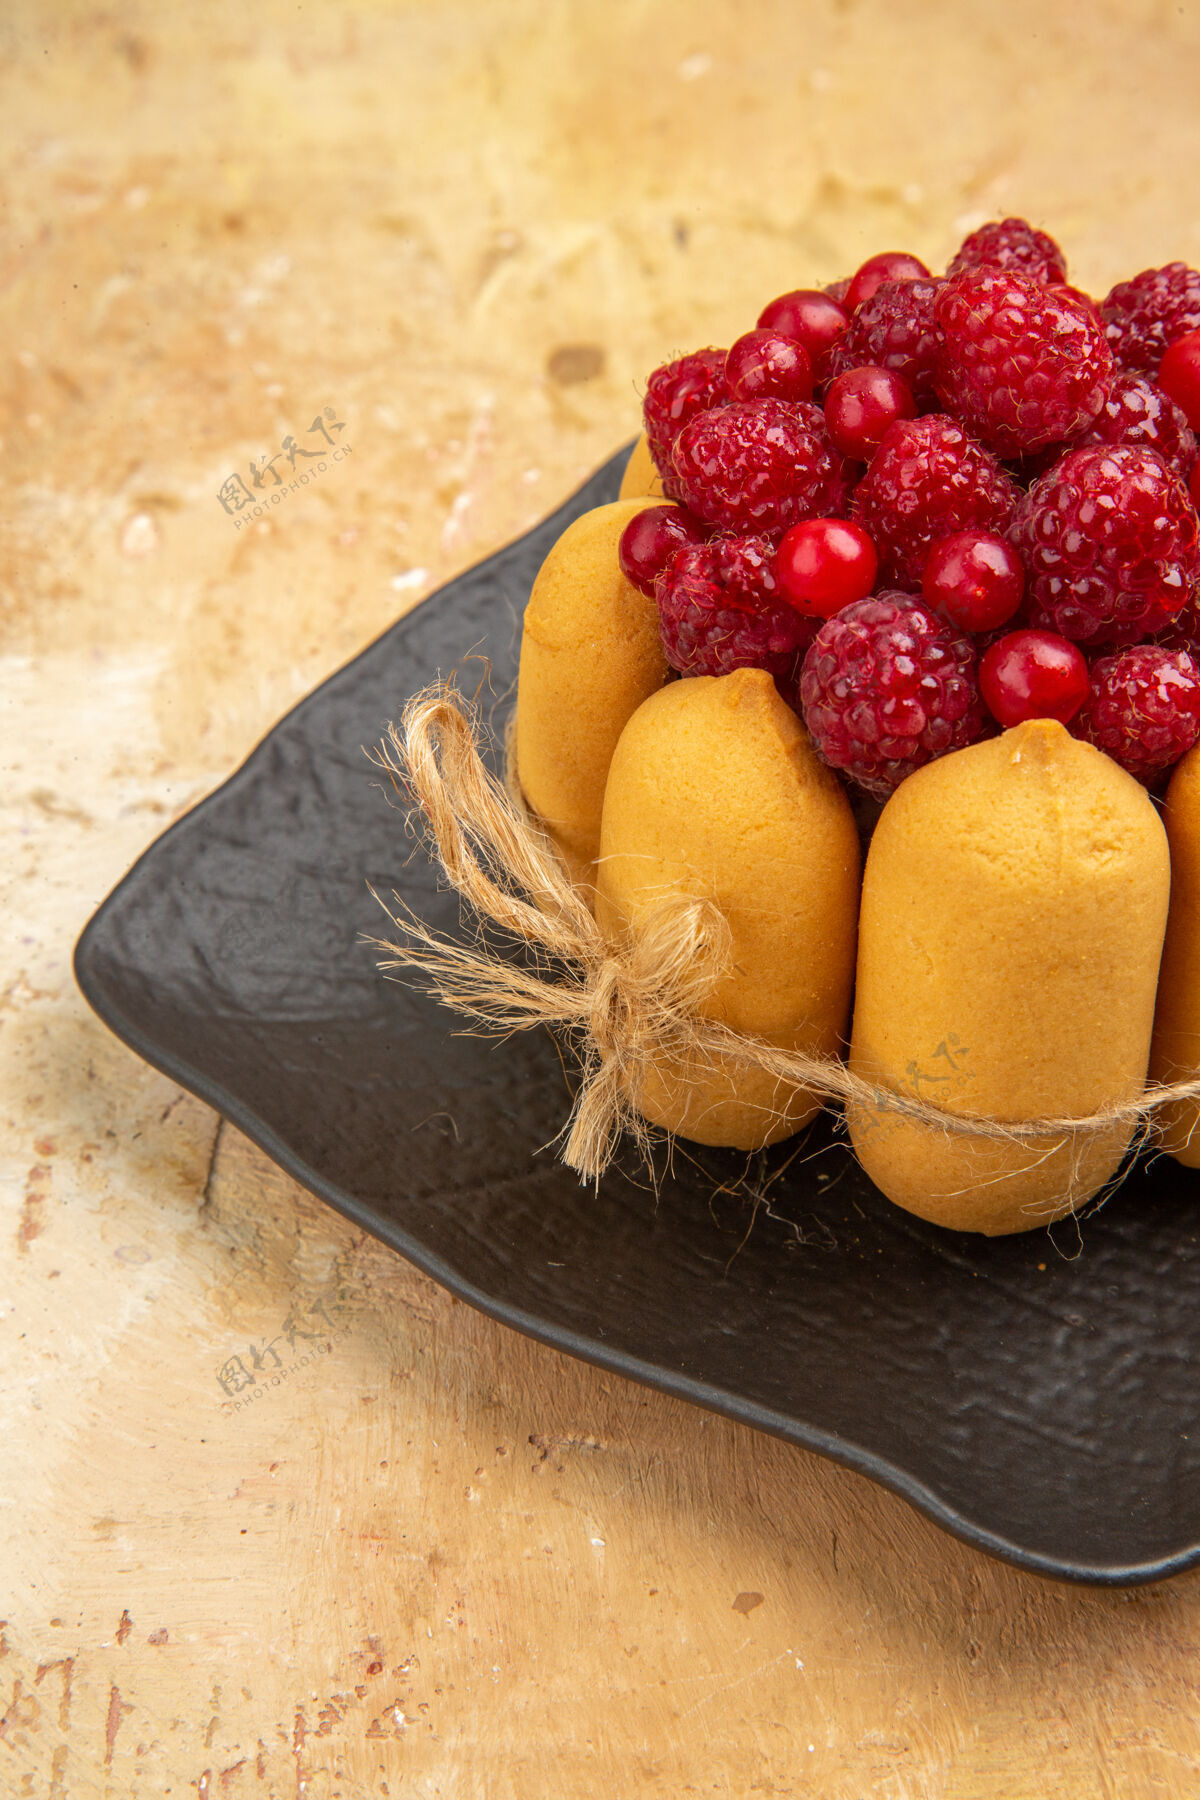 可食用水果混色桌上水果蛋糕的半张照片新鲜水果浆果